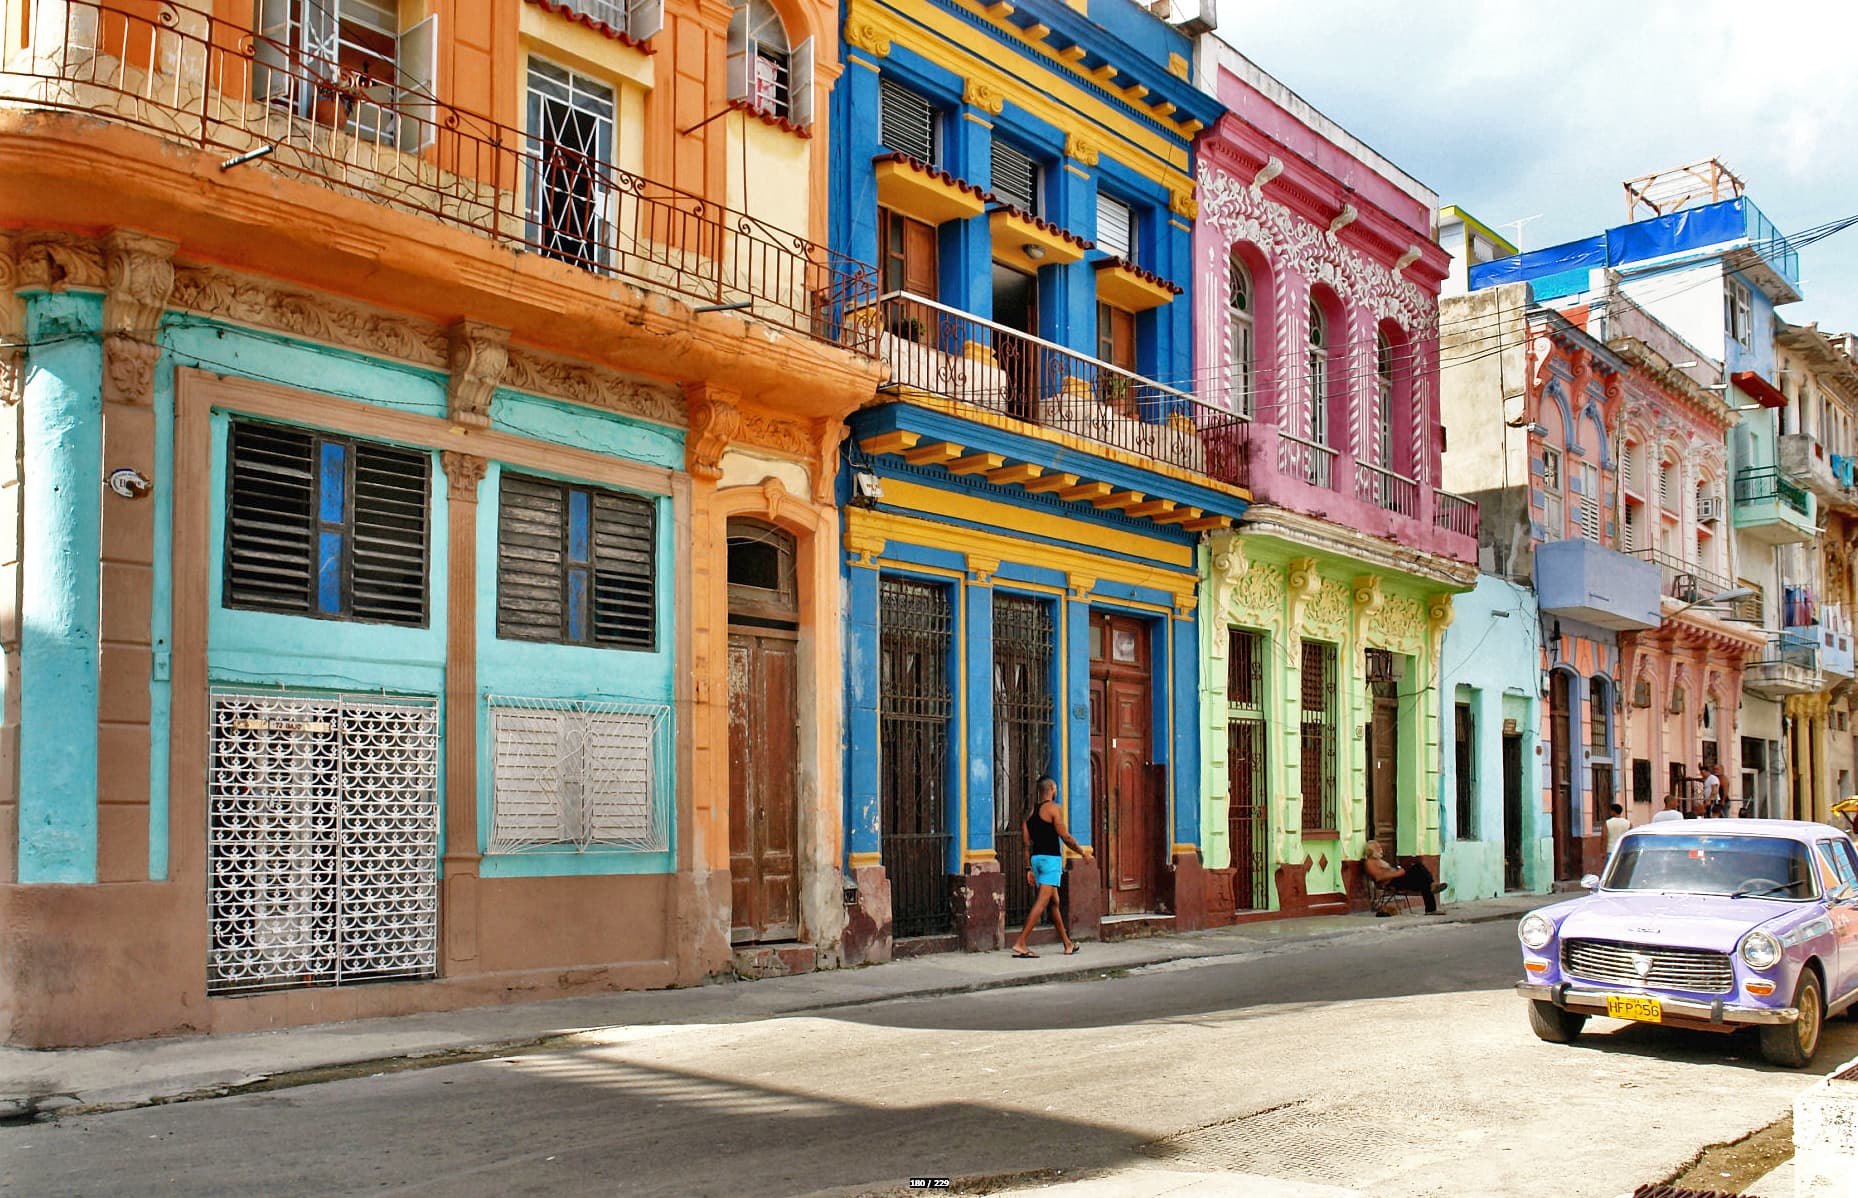 På en reise til Cuba og Havana ser farvestrålende bygninger